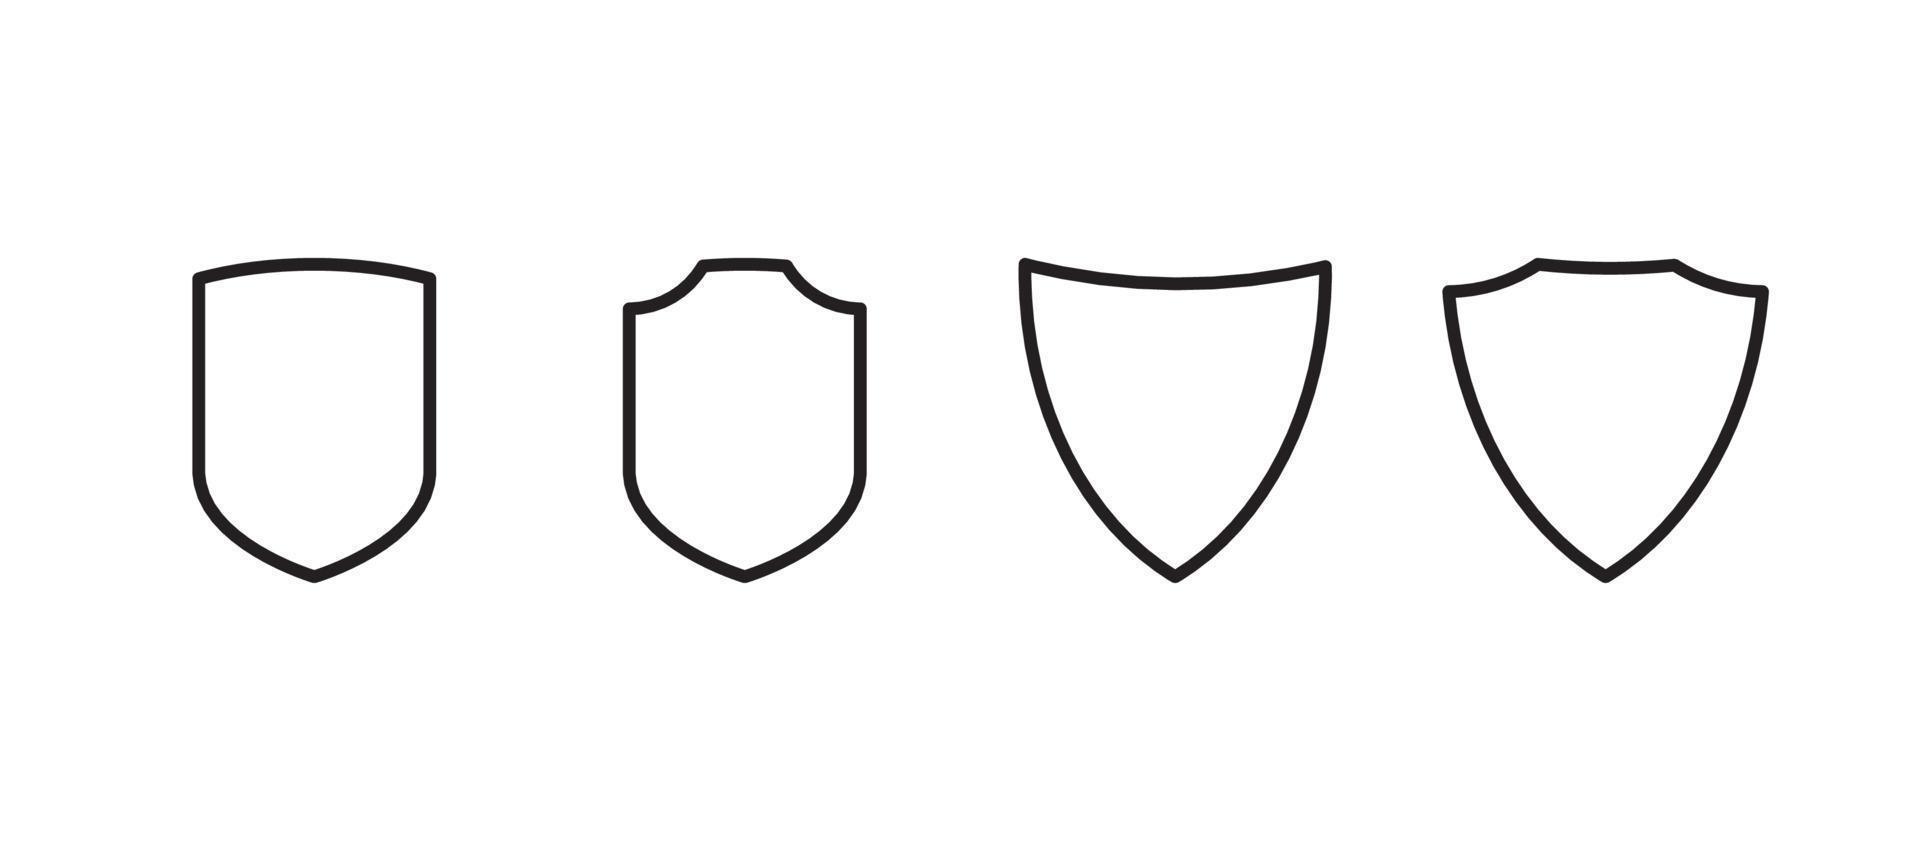 illustrazione vettoriale piatta del simbolo della protezione assicurativa e dello scudo di sicurezza.